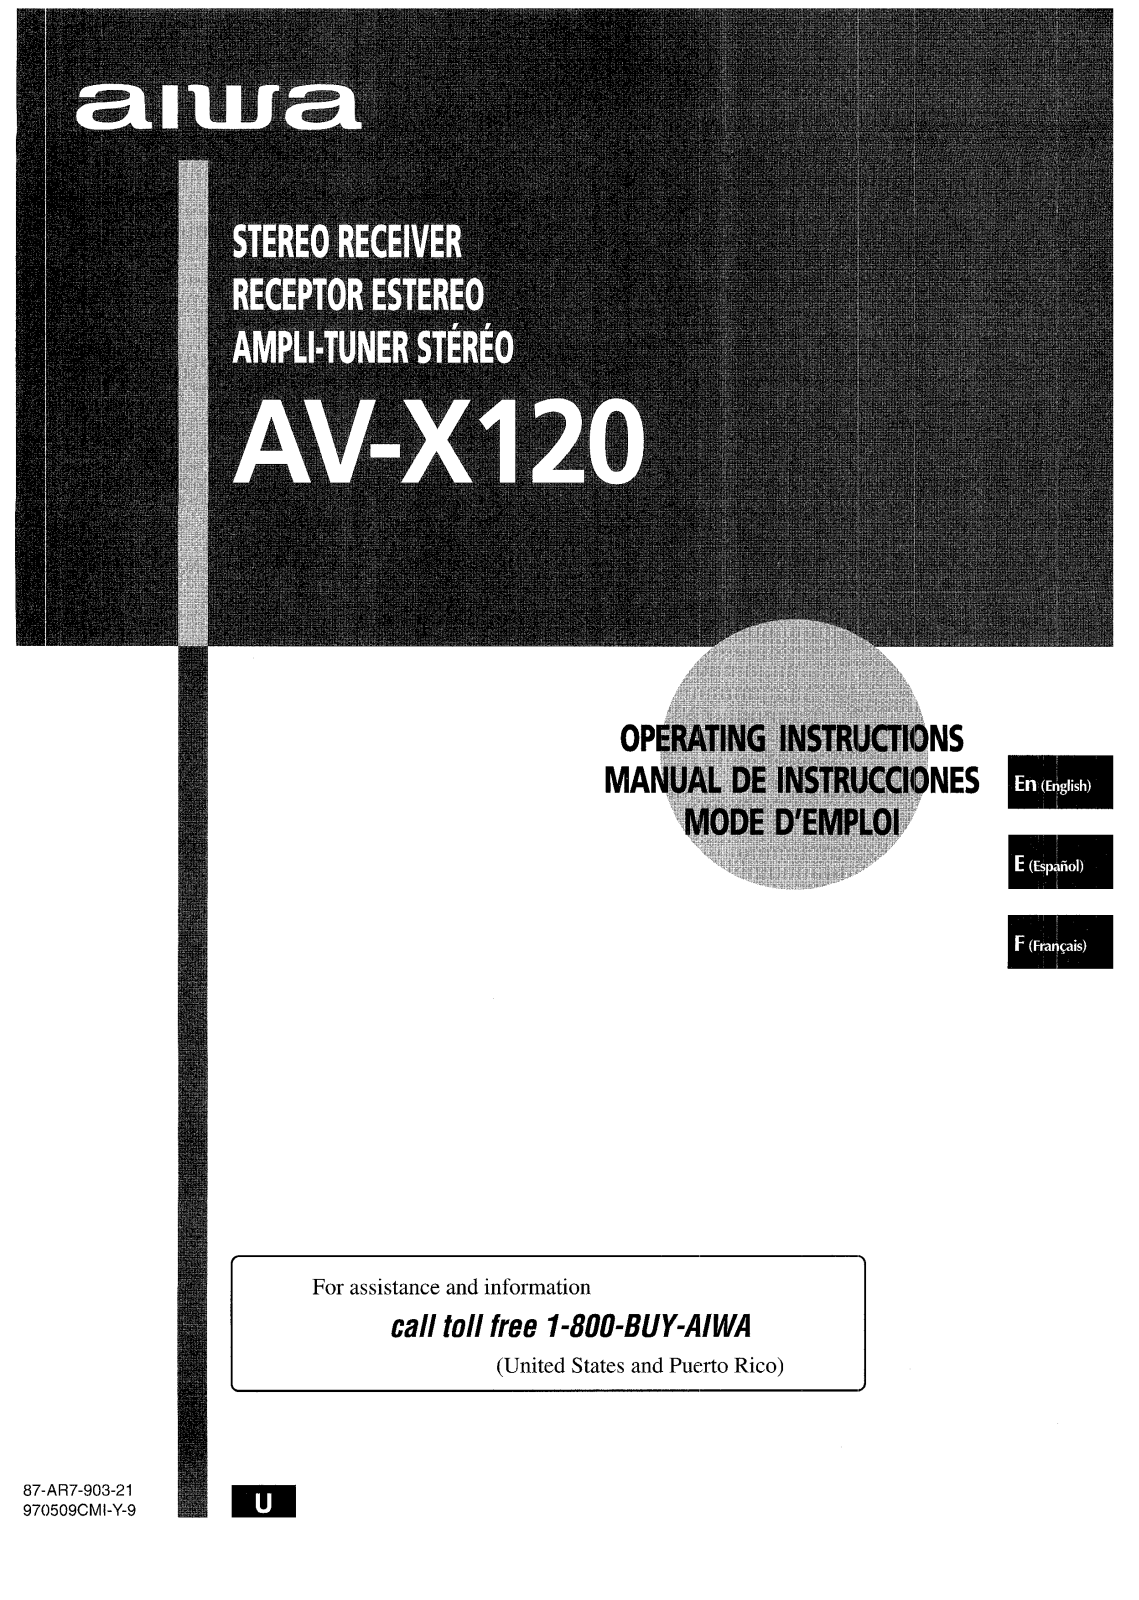 Sony AVX120 Operating Manual